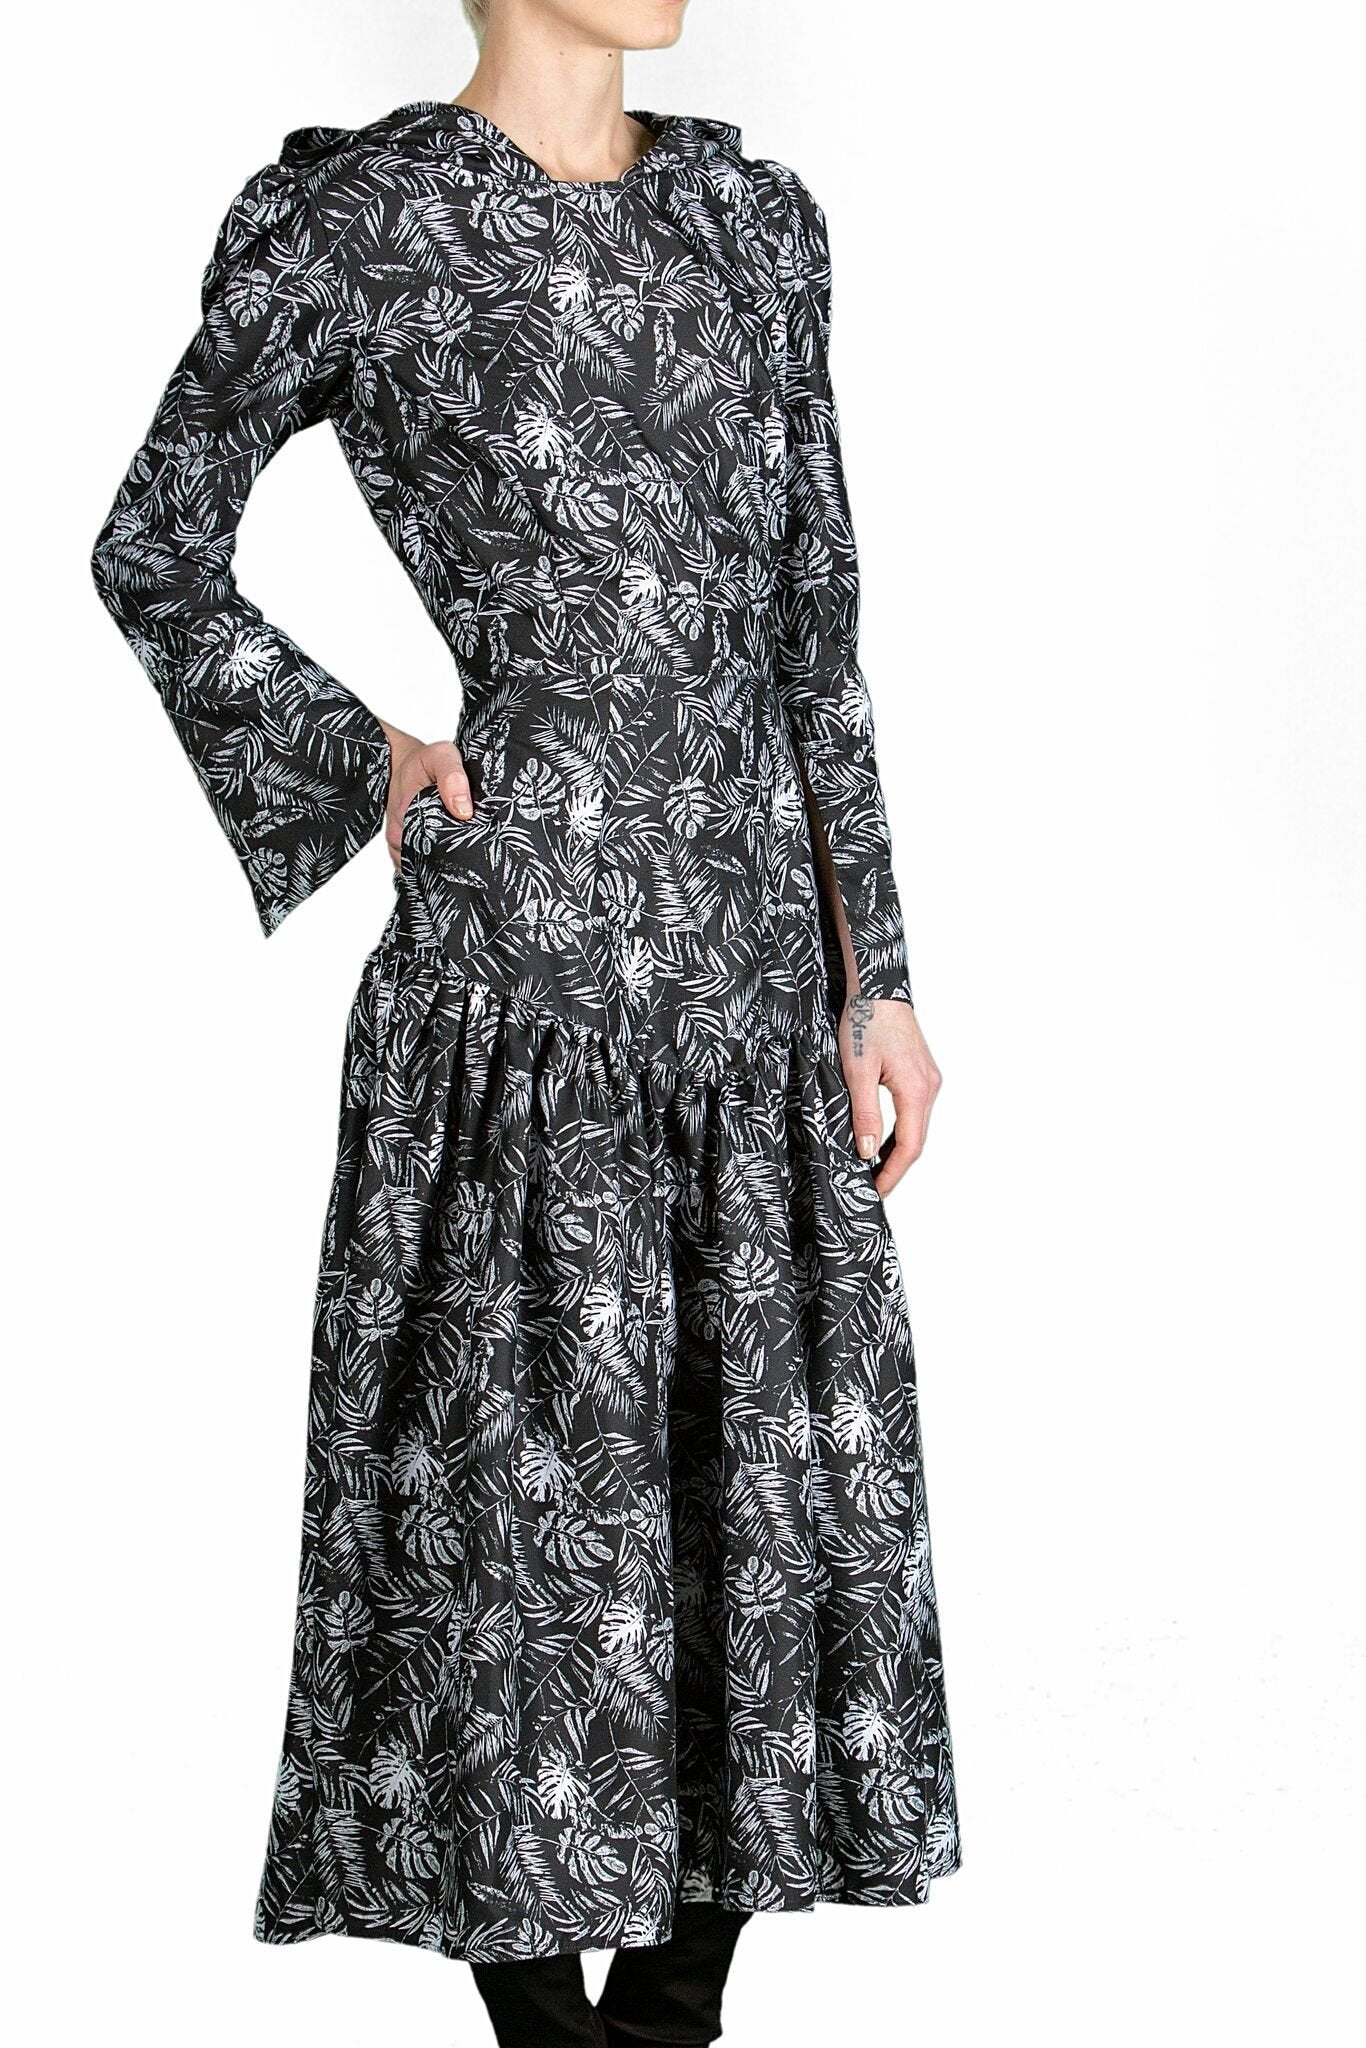 Ylai Dress - The Clothing LoungeCorina Boboc